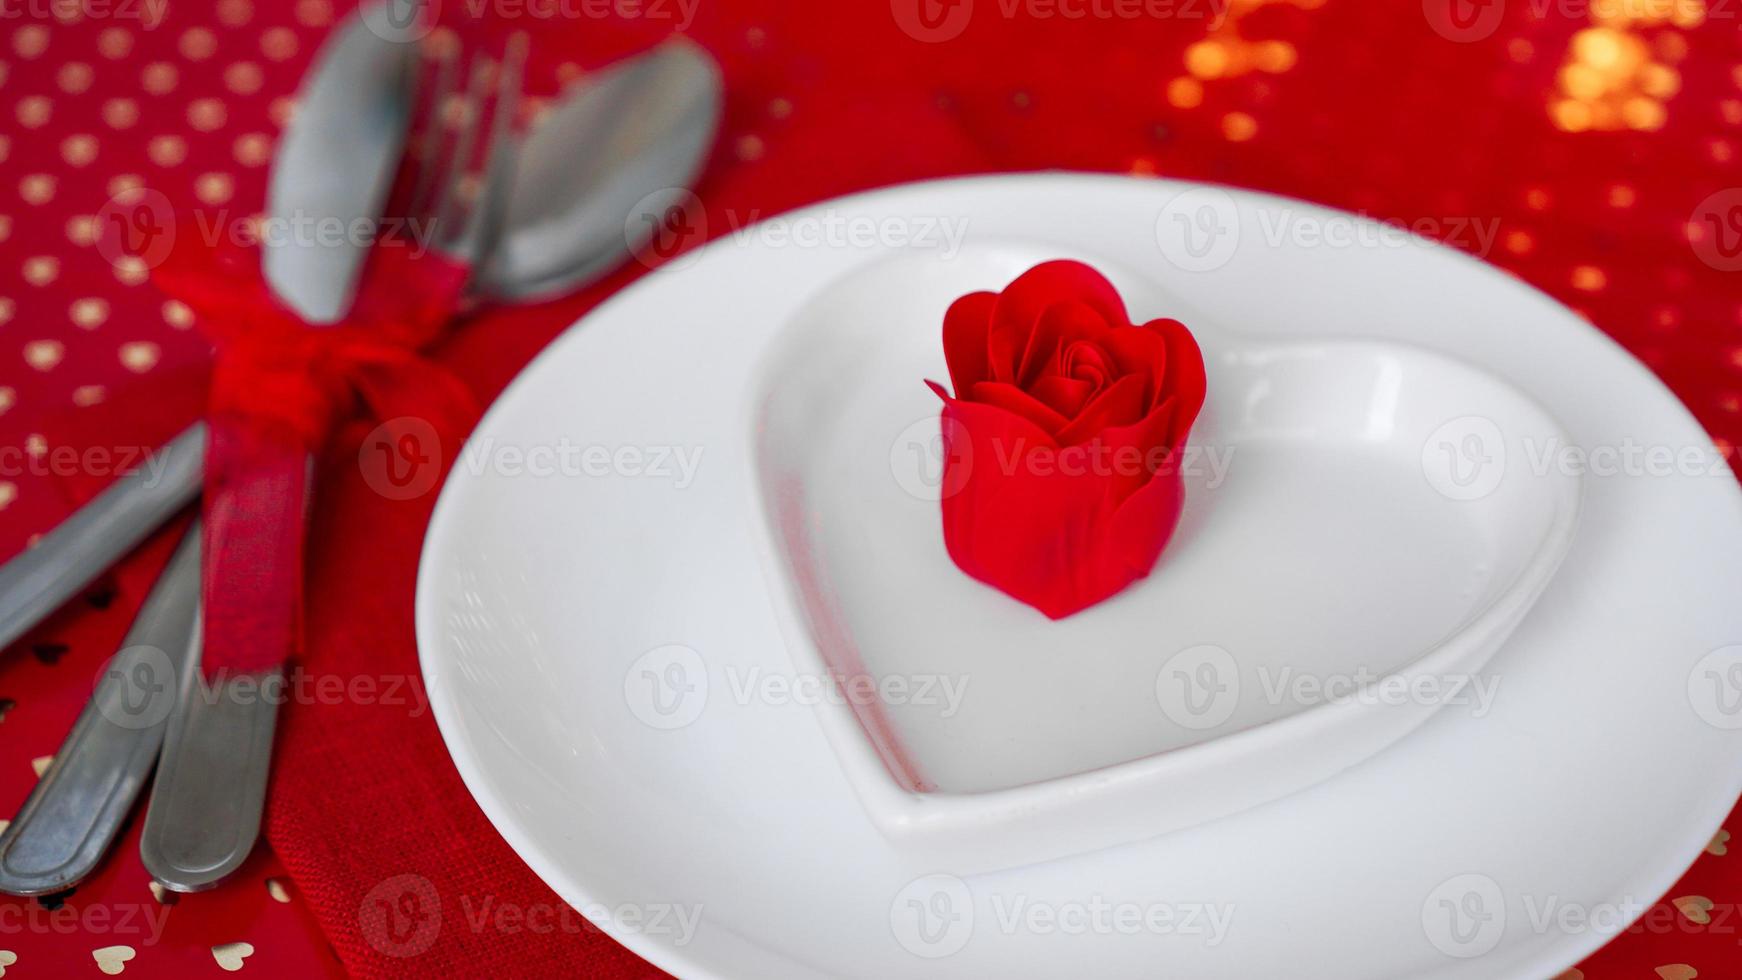 decoración romántica de la mesa navideña - fondo rojo foto